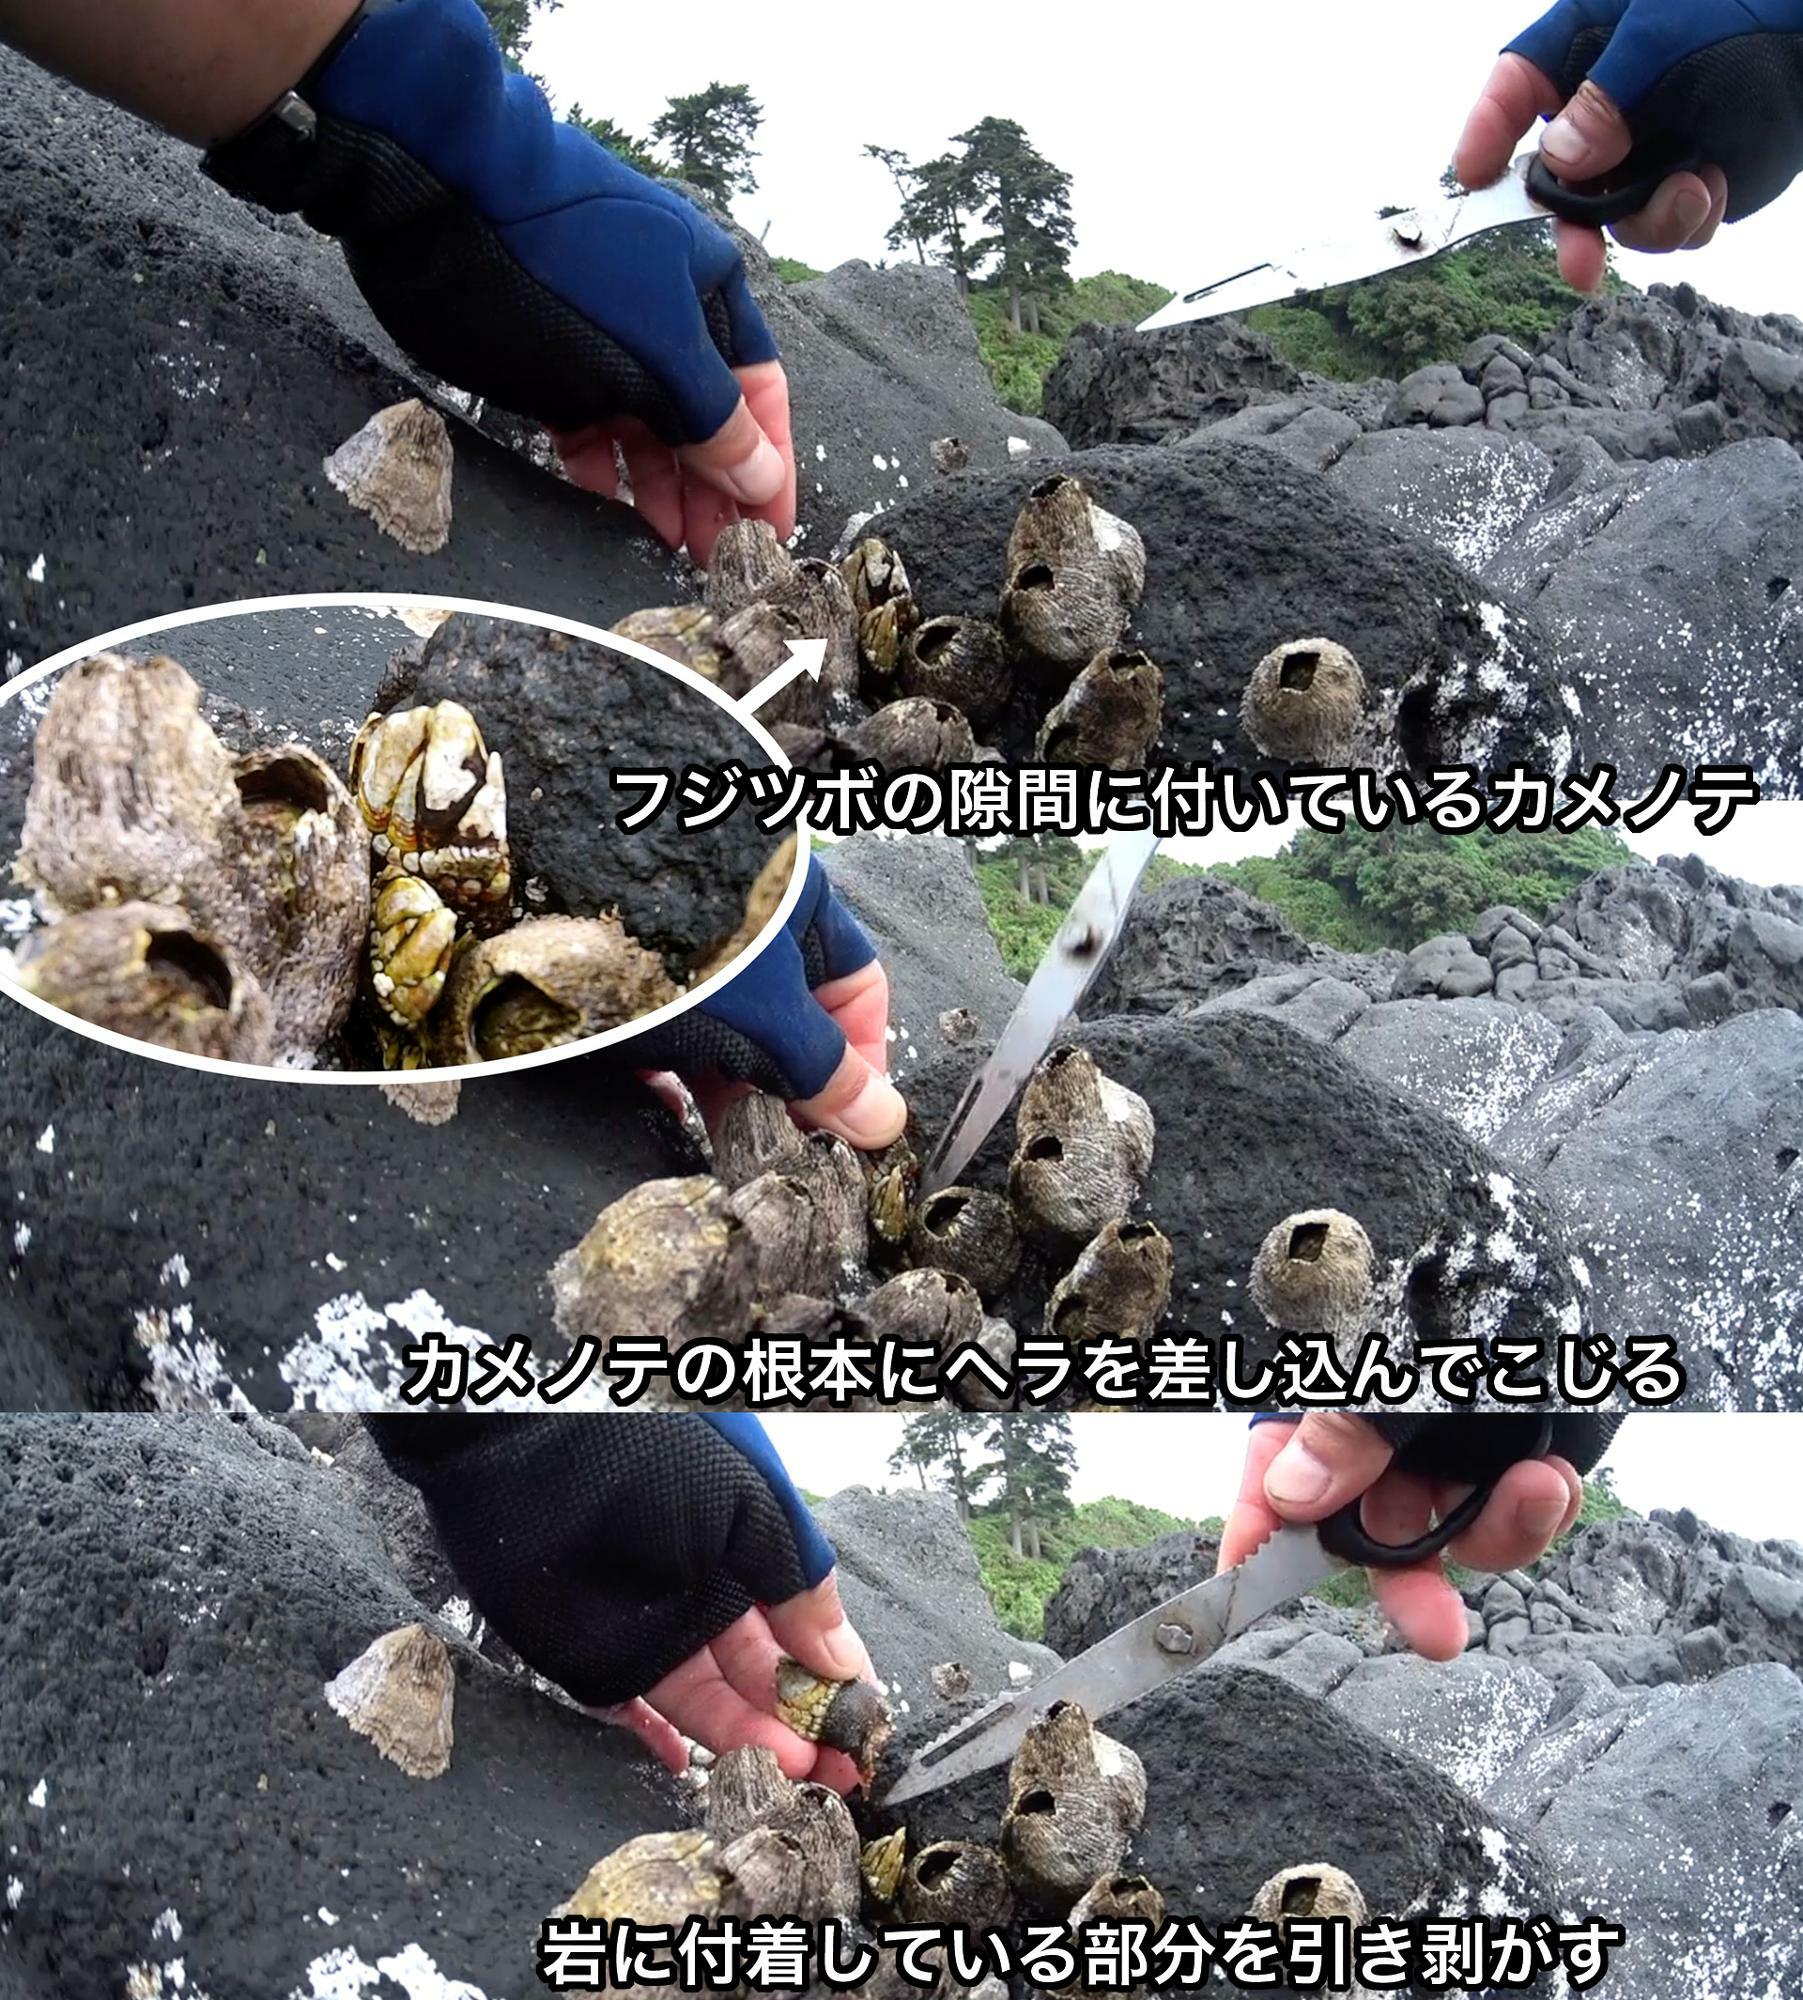 カメノテが岩に付着している部分に金属ヘラを差し込んでこじって引き剥がす